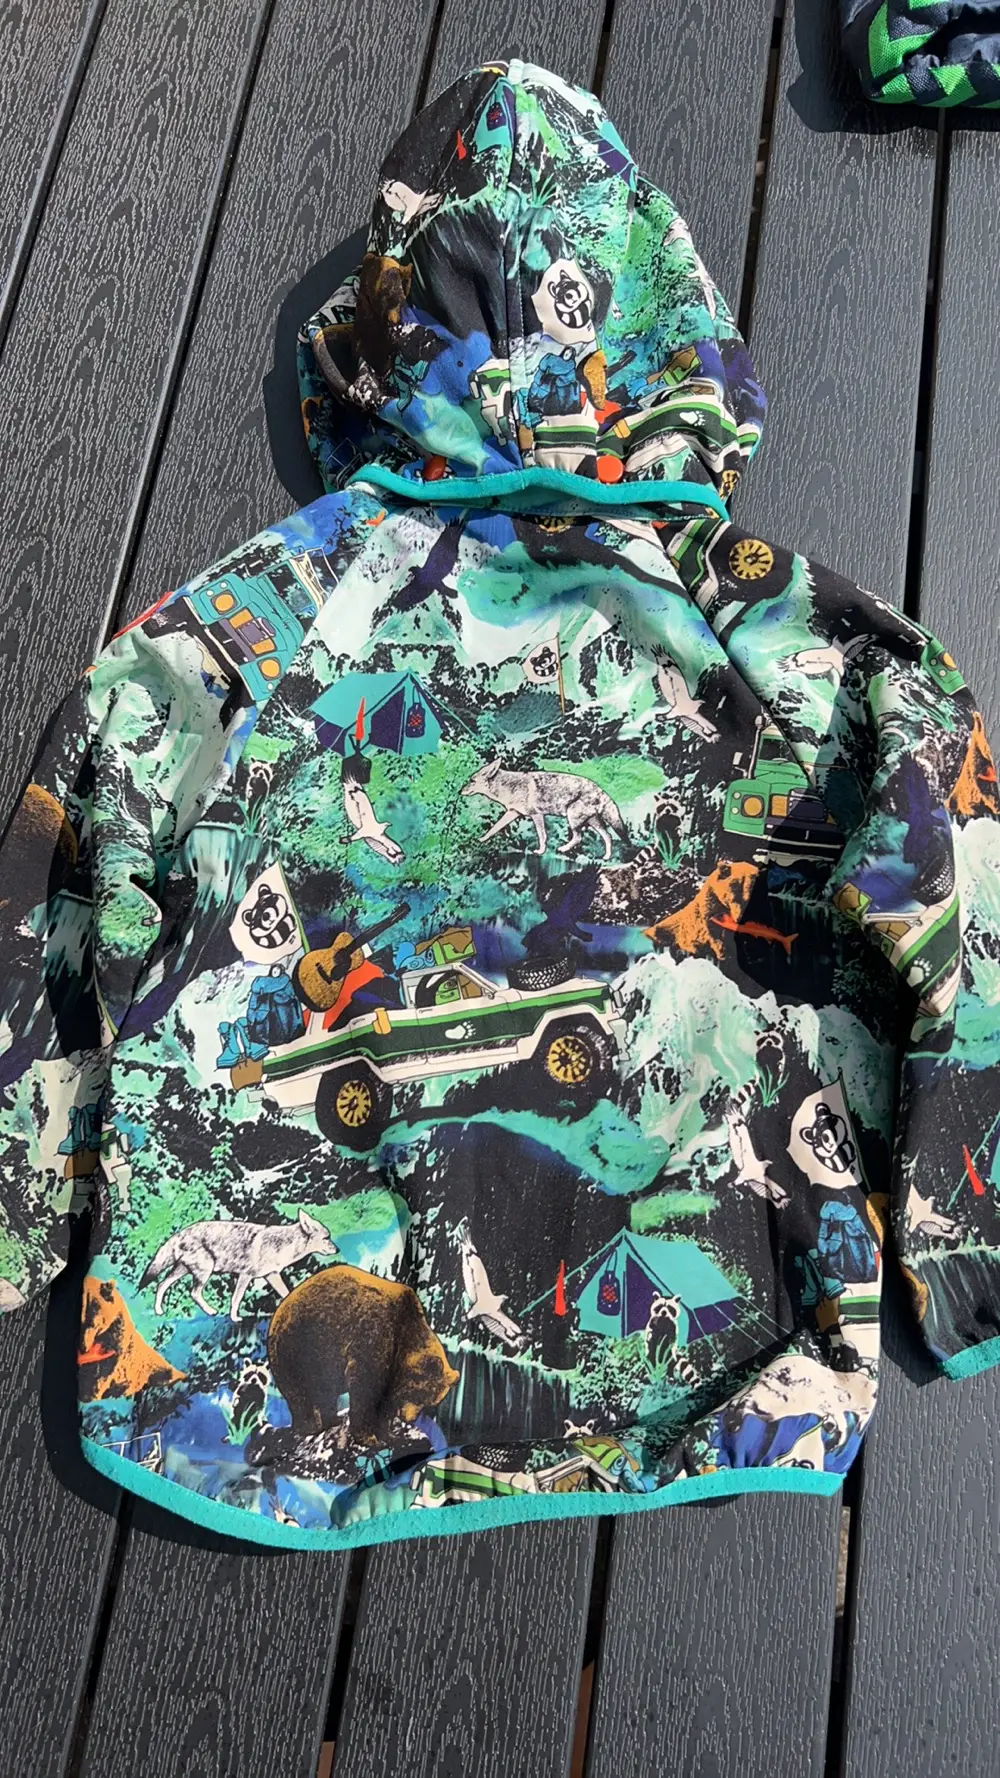 udbytte Uskyldig købmand Køb Ej Sikke Lej Softshell jakke i størrelse 104 af Pernille på Reshopper ·  Shop secondhand til børn, mor og bolig